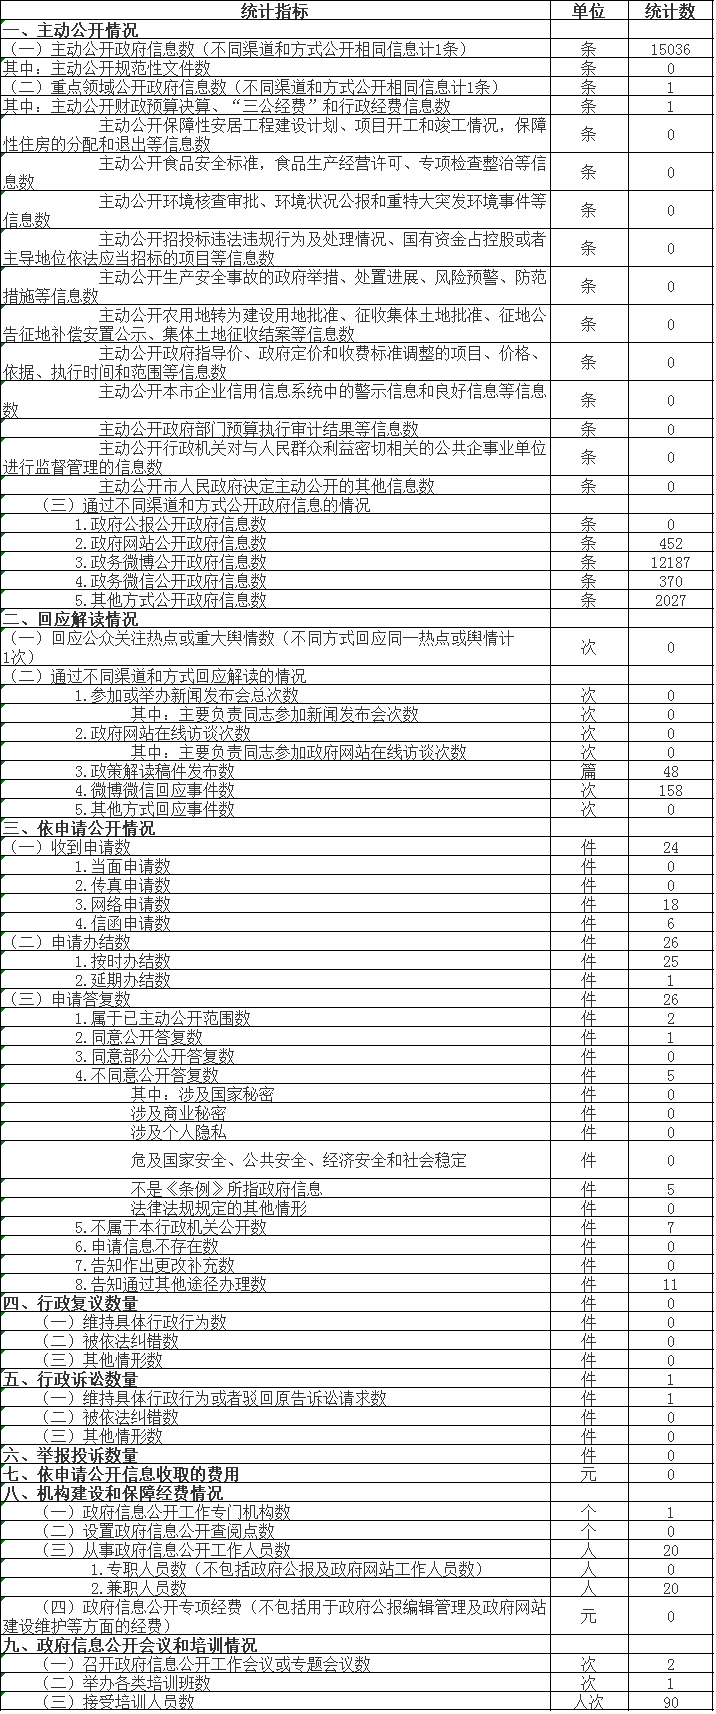 北京市信访办公室政府信息公开情况统计表